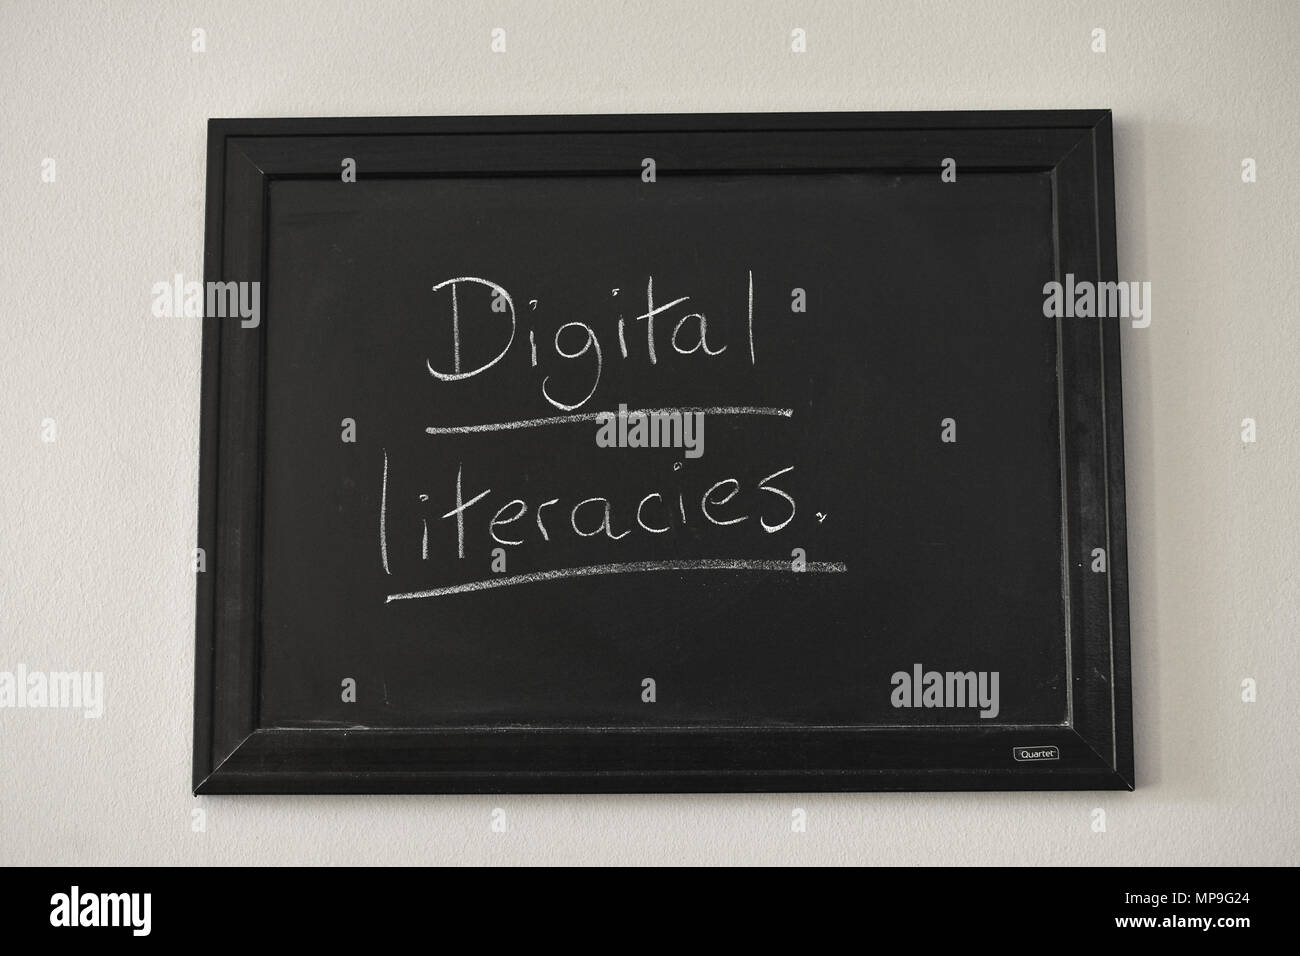 Digitaler Grundkompetenzen in weißer Kreide auf einer Tafel an der Wand montiert. Stockfoto